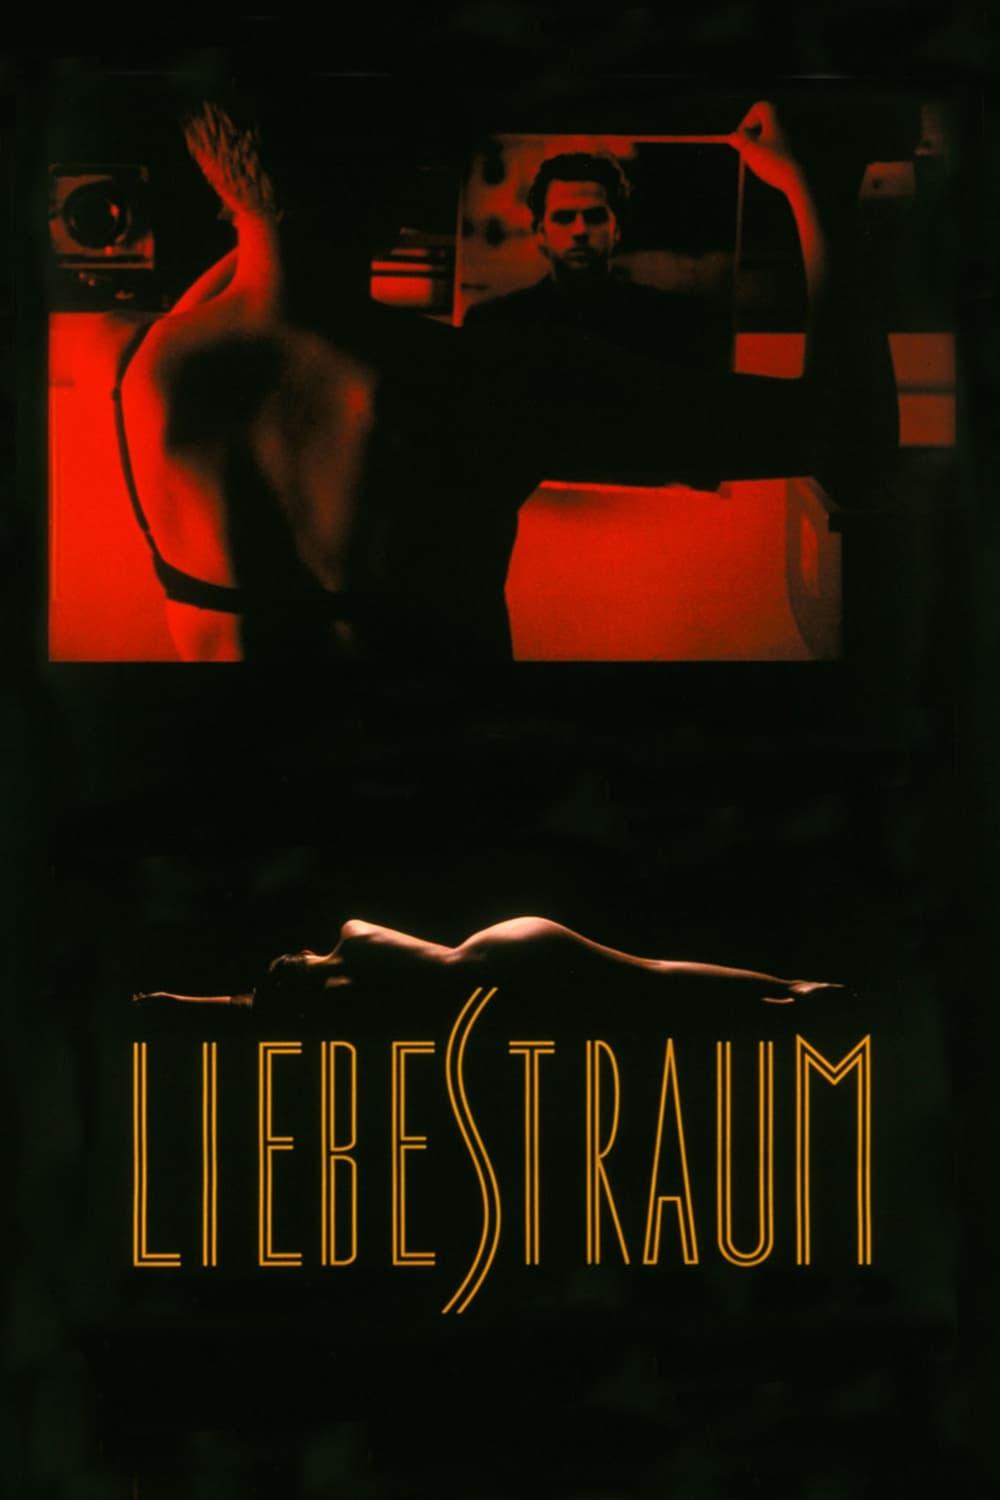 Liebestraum poster